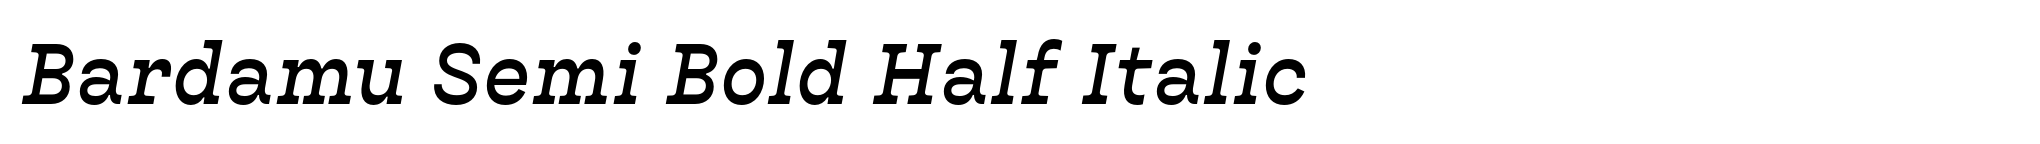 Bardamu Semi Bold Half Italic image